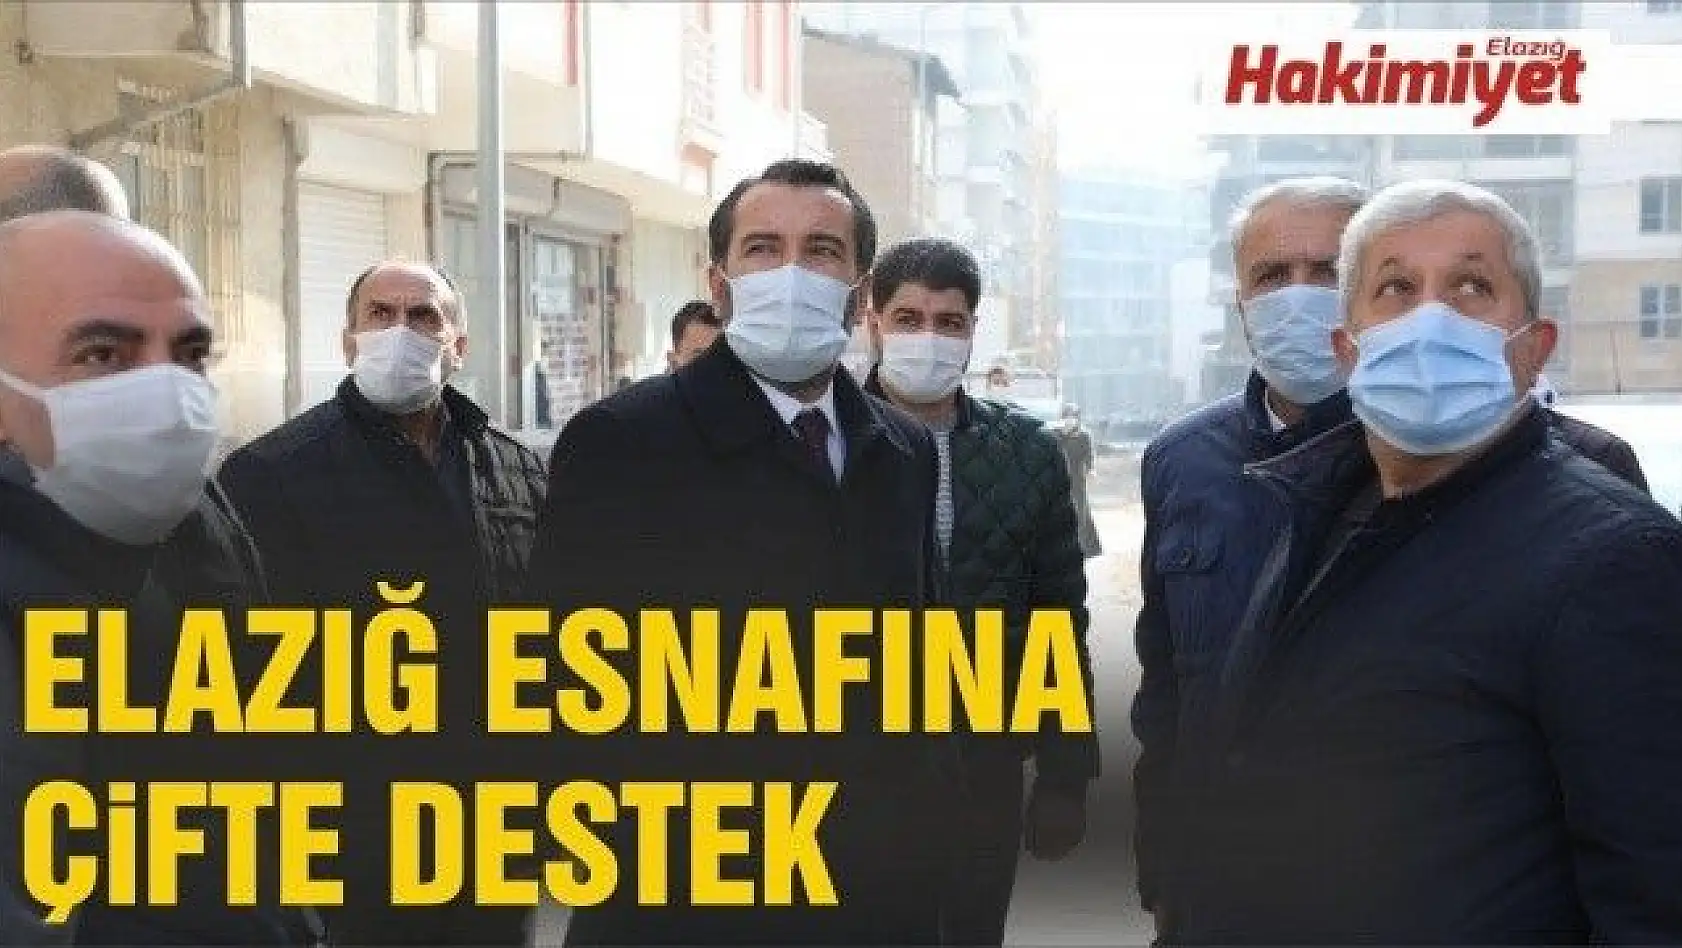 Elazığ'da pandemi nedeniyle iş yerleri kapanan esnaf çifte destekten yararlanacak